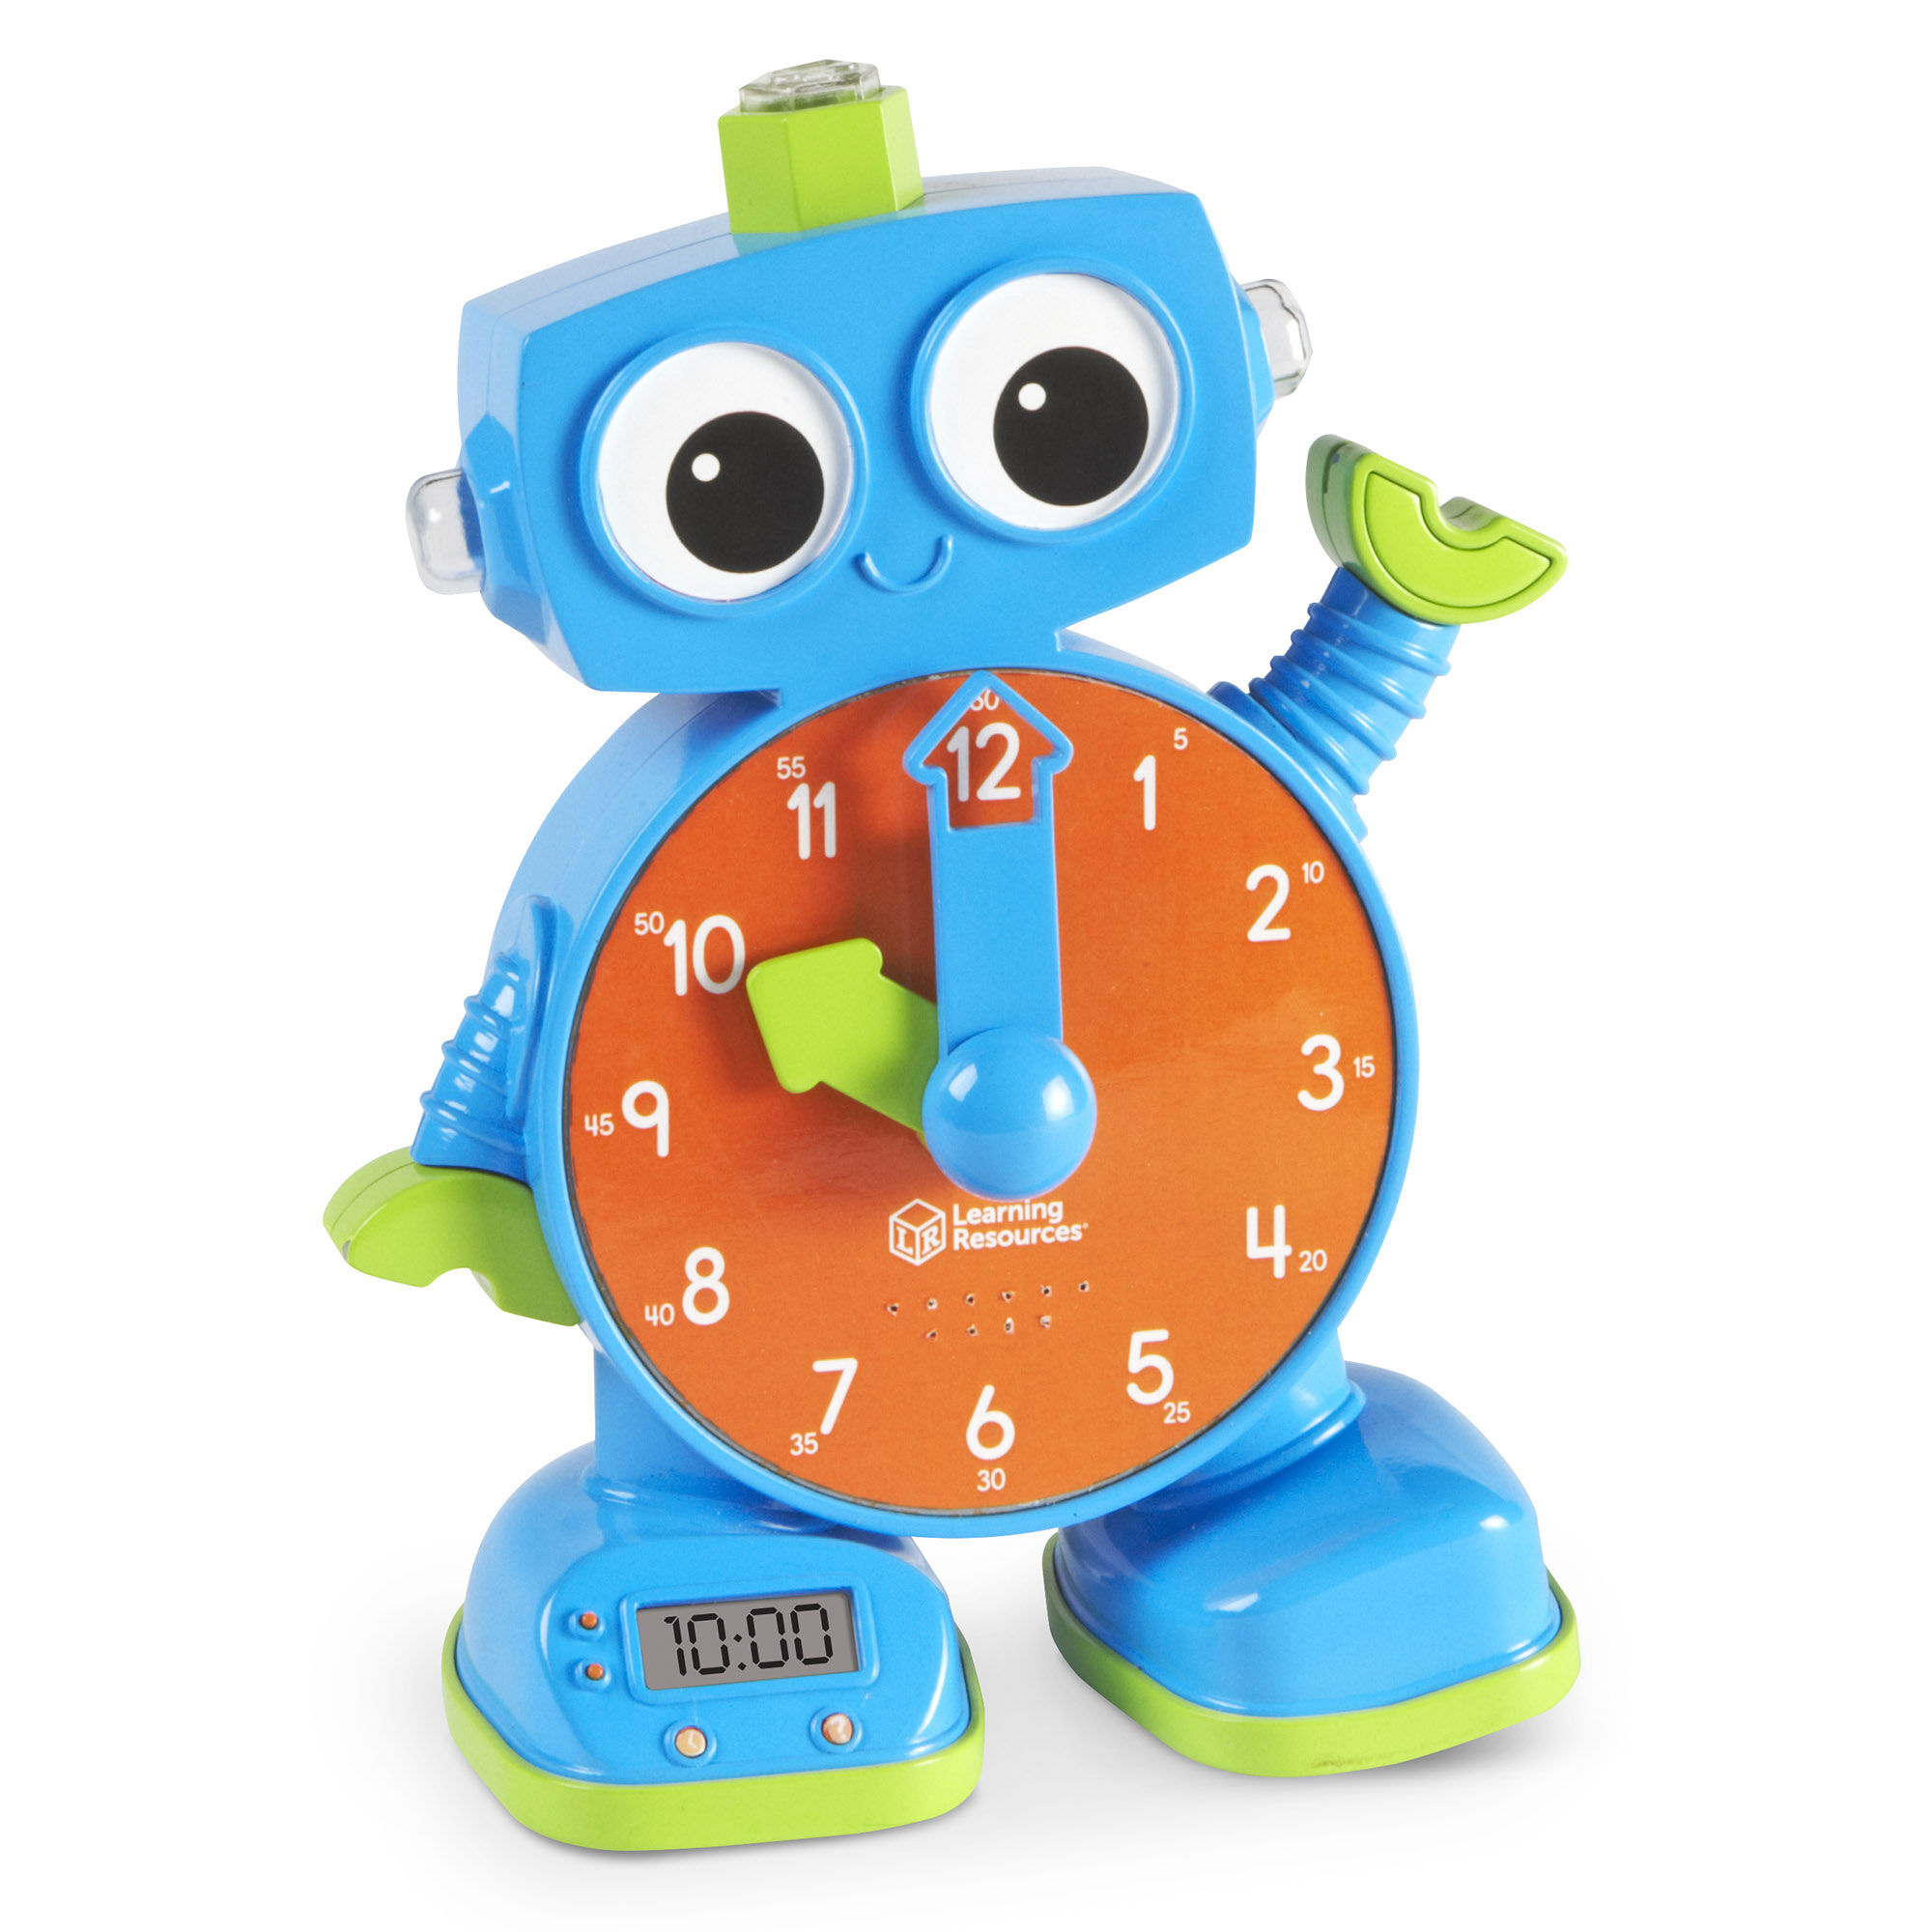 Купить игрушку часы. Часы игрушка. Детские часы игрушка. Интерактивная игрушка часы. Игрушечные часики.